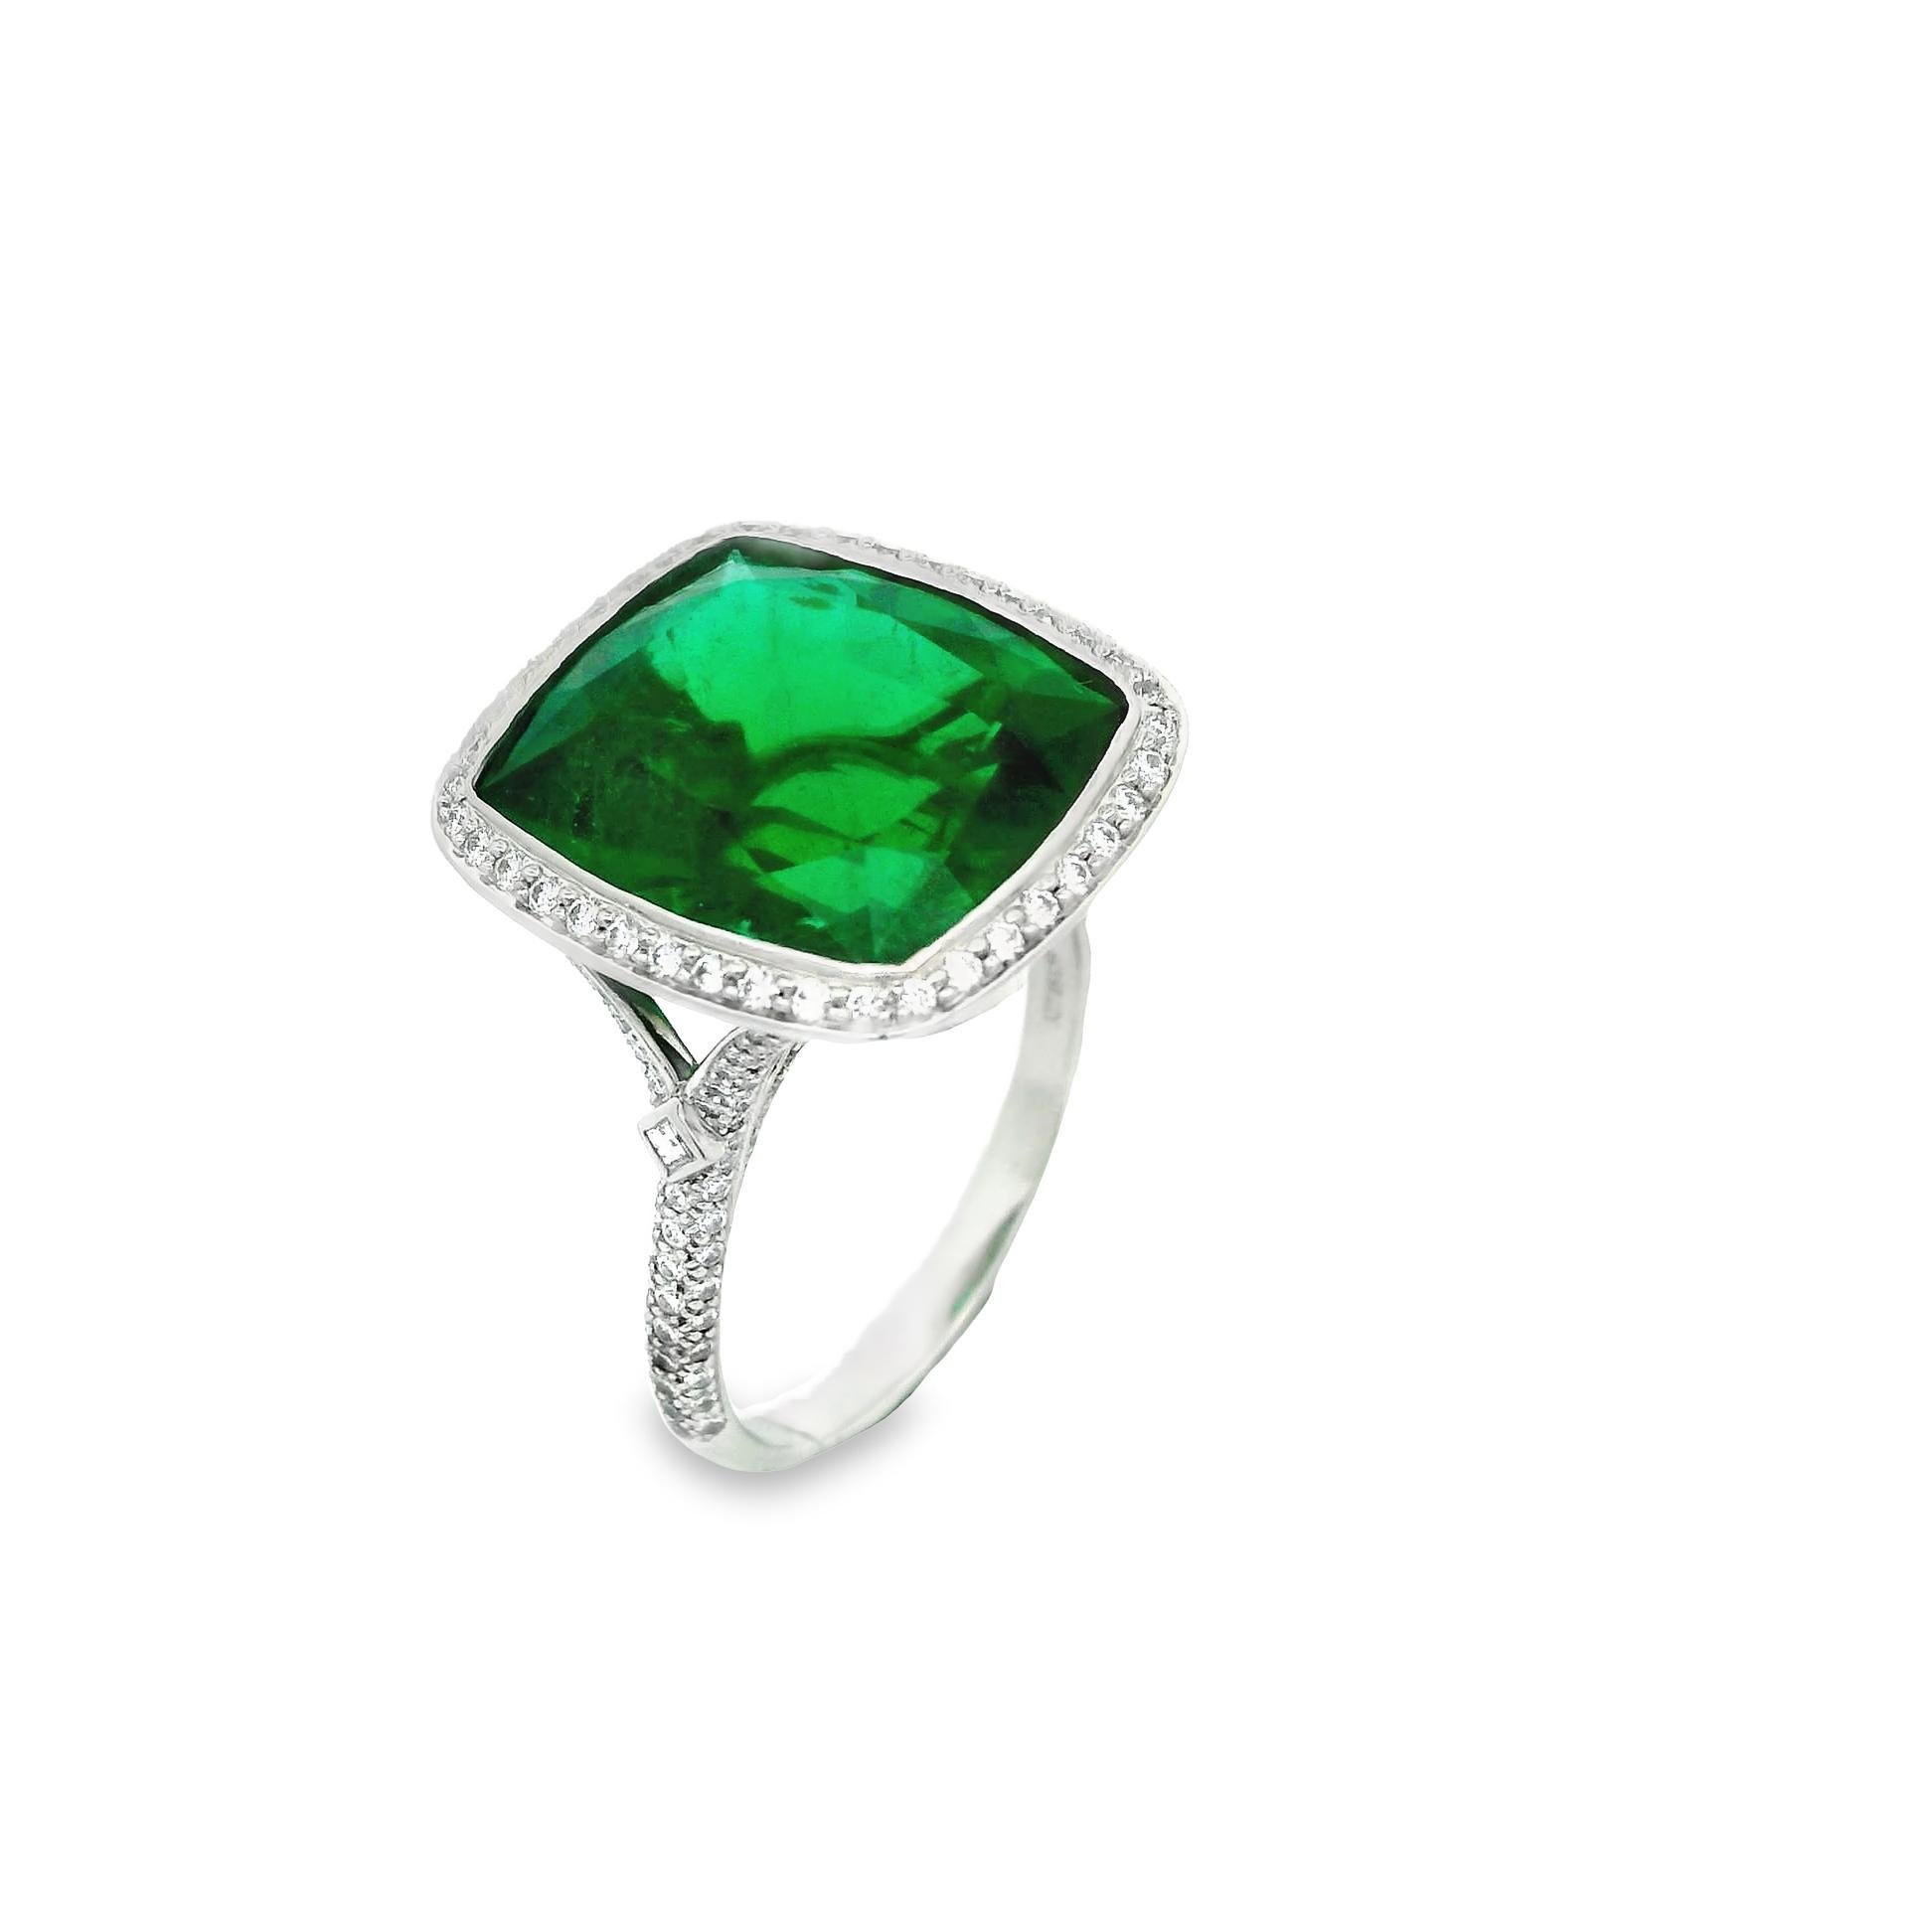 Une bague en émeraude tout simplement incroyable, signée par le célèbre joaillier Tiffany & Co. L'émeraude en forme de coussin pèse 9,41 carats et présente une couleur vert vif intense qui rivalise avec n'importe quelle autre émeraude. Il est